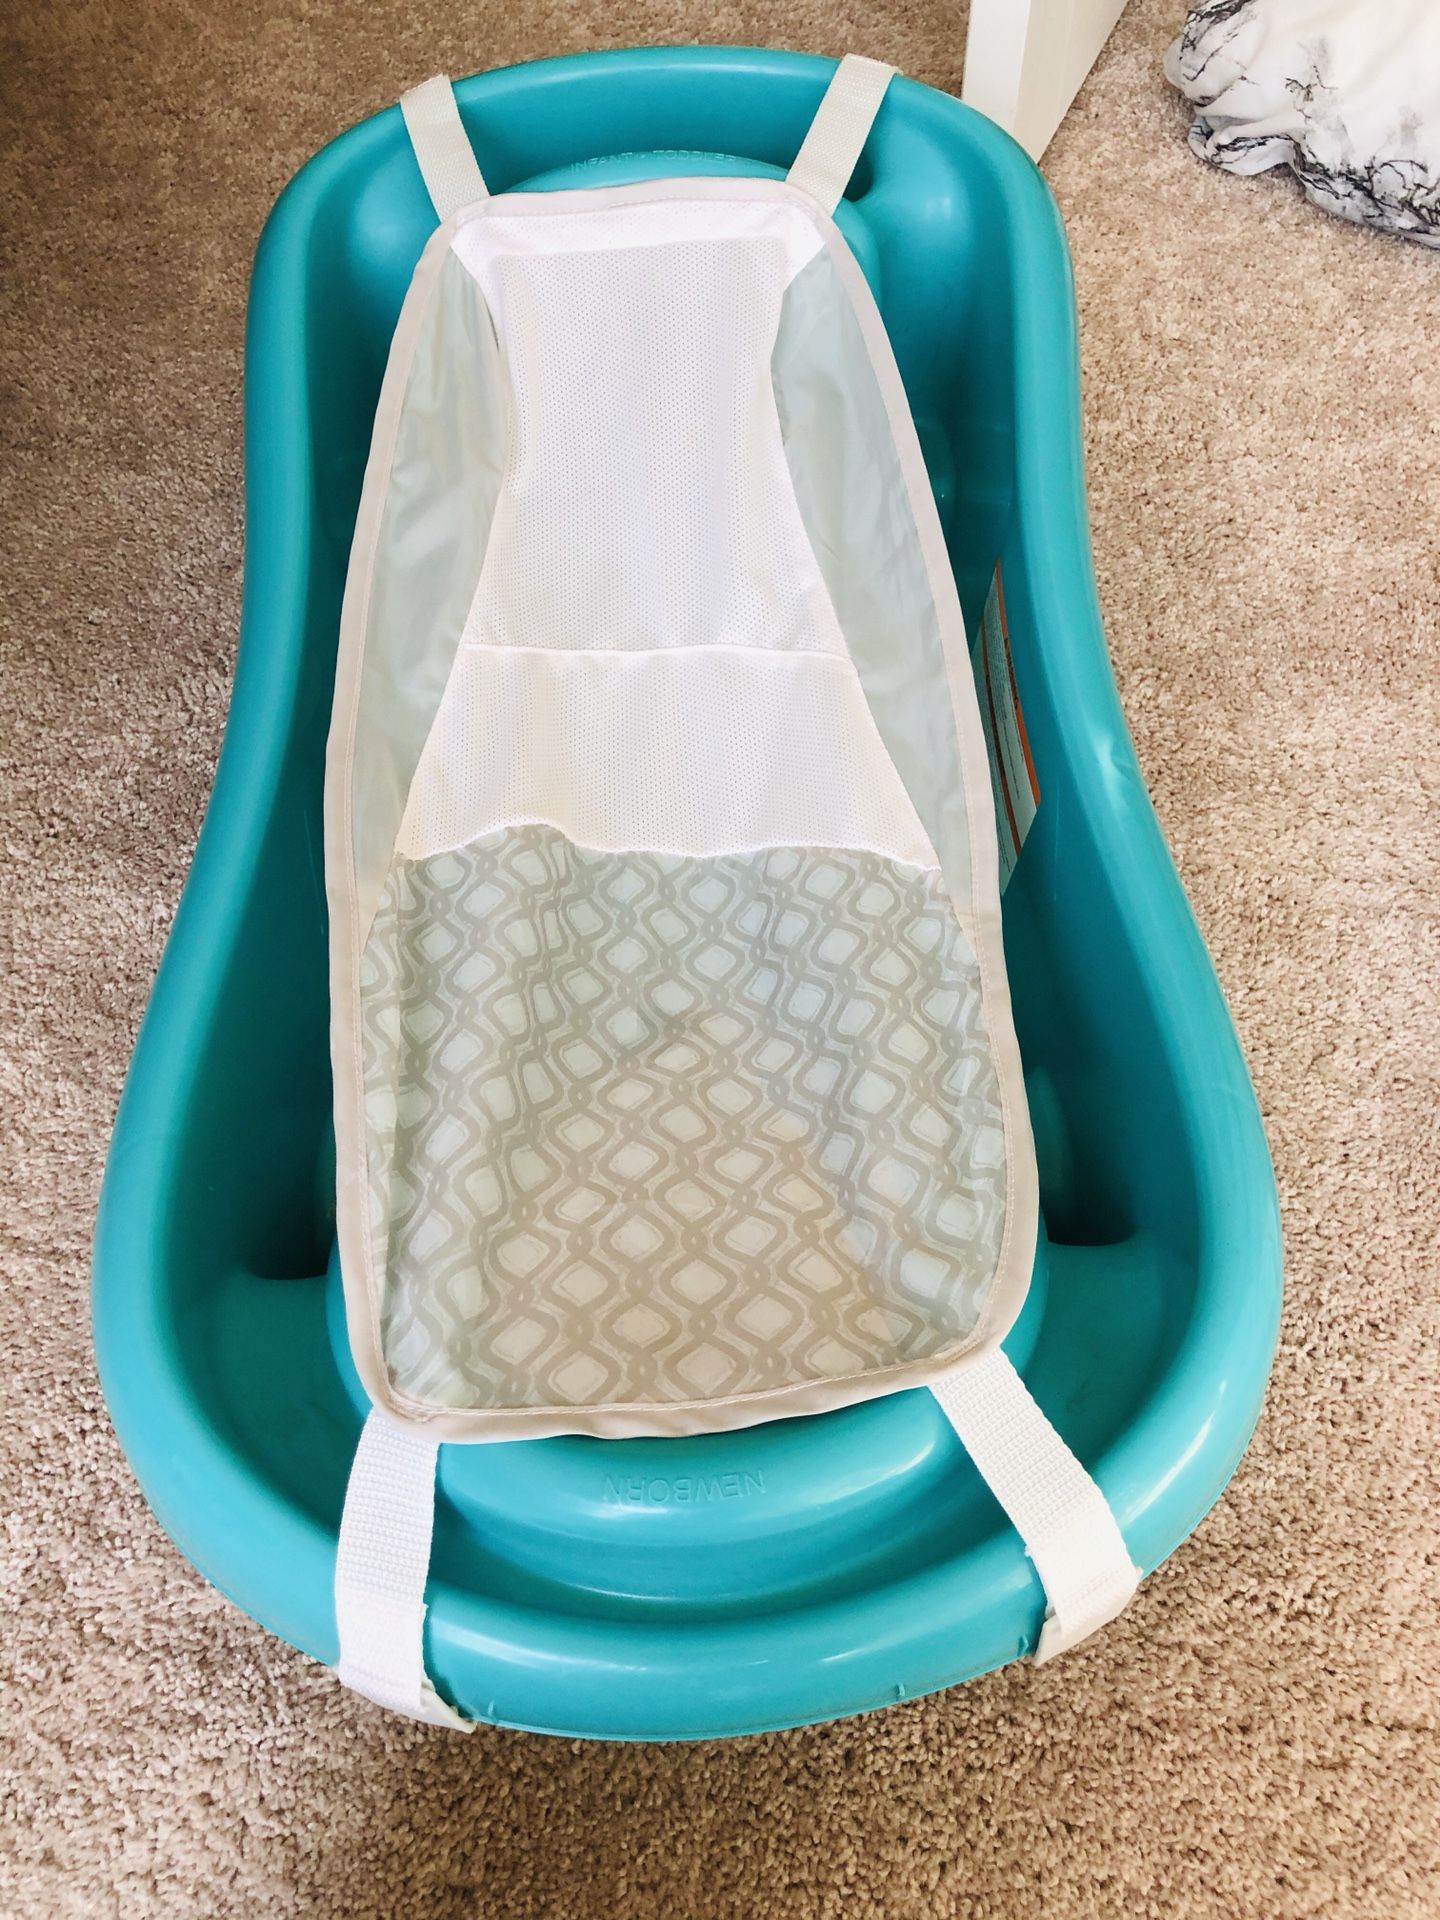 Infant/Toddler Tub